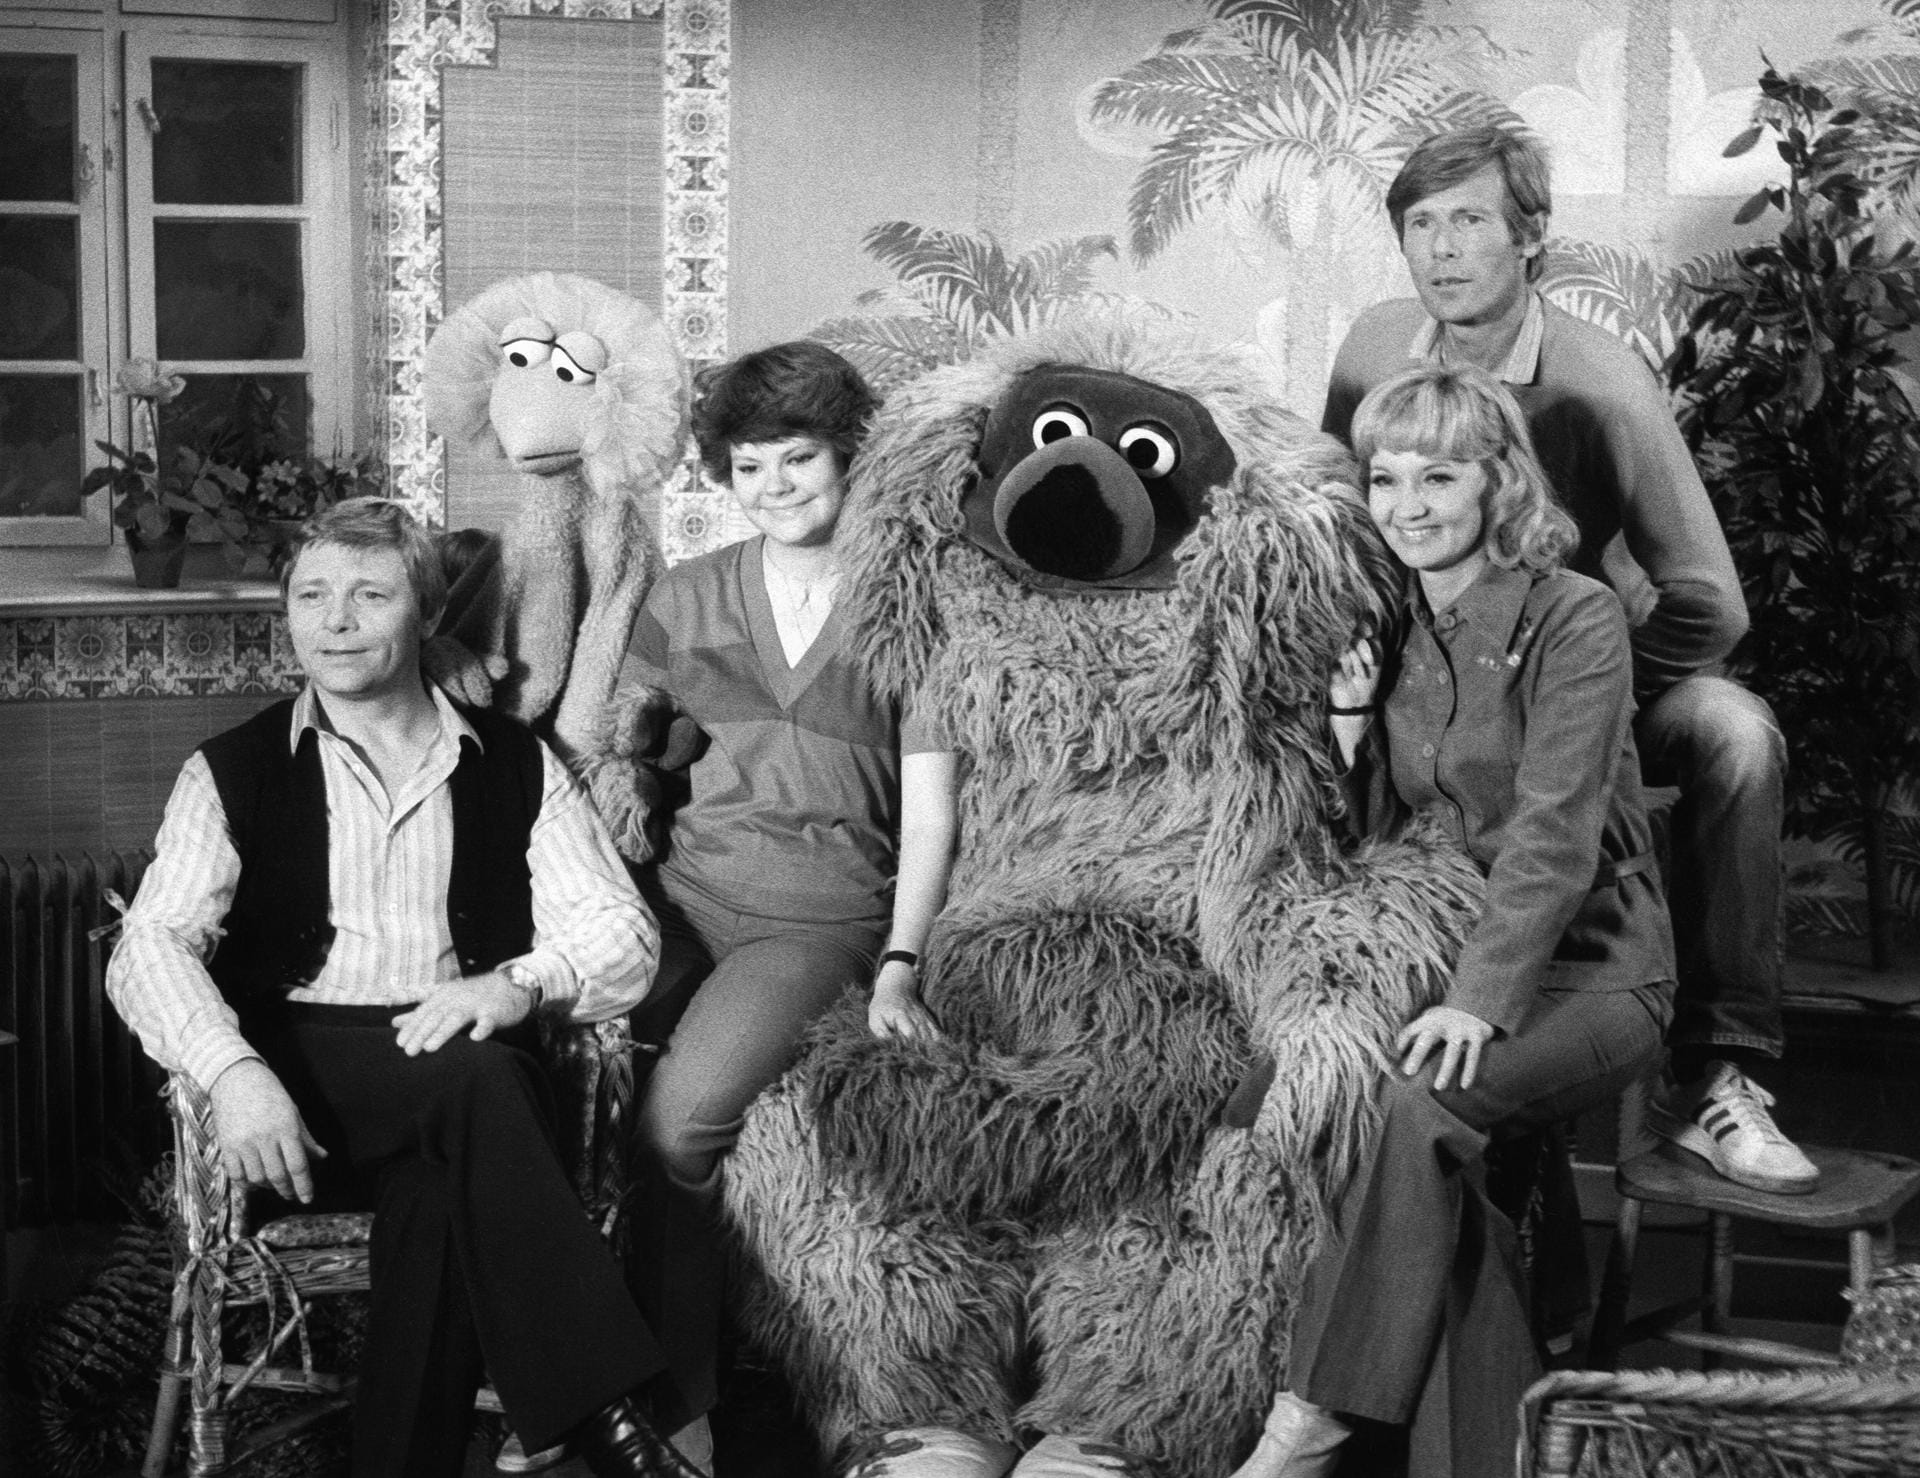 Januar 1978: Das Team der Sesamstraße posiert für ein Gruppenfoto. Zu sehen sind Uwe Friedrichsen, Tiffy, Ilse Biberti, Samson, Liselotte Pulver und Horst Janson.